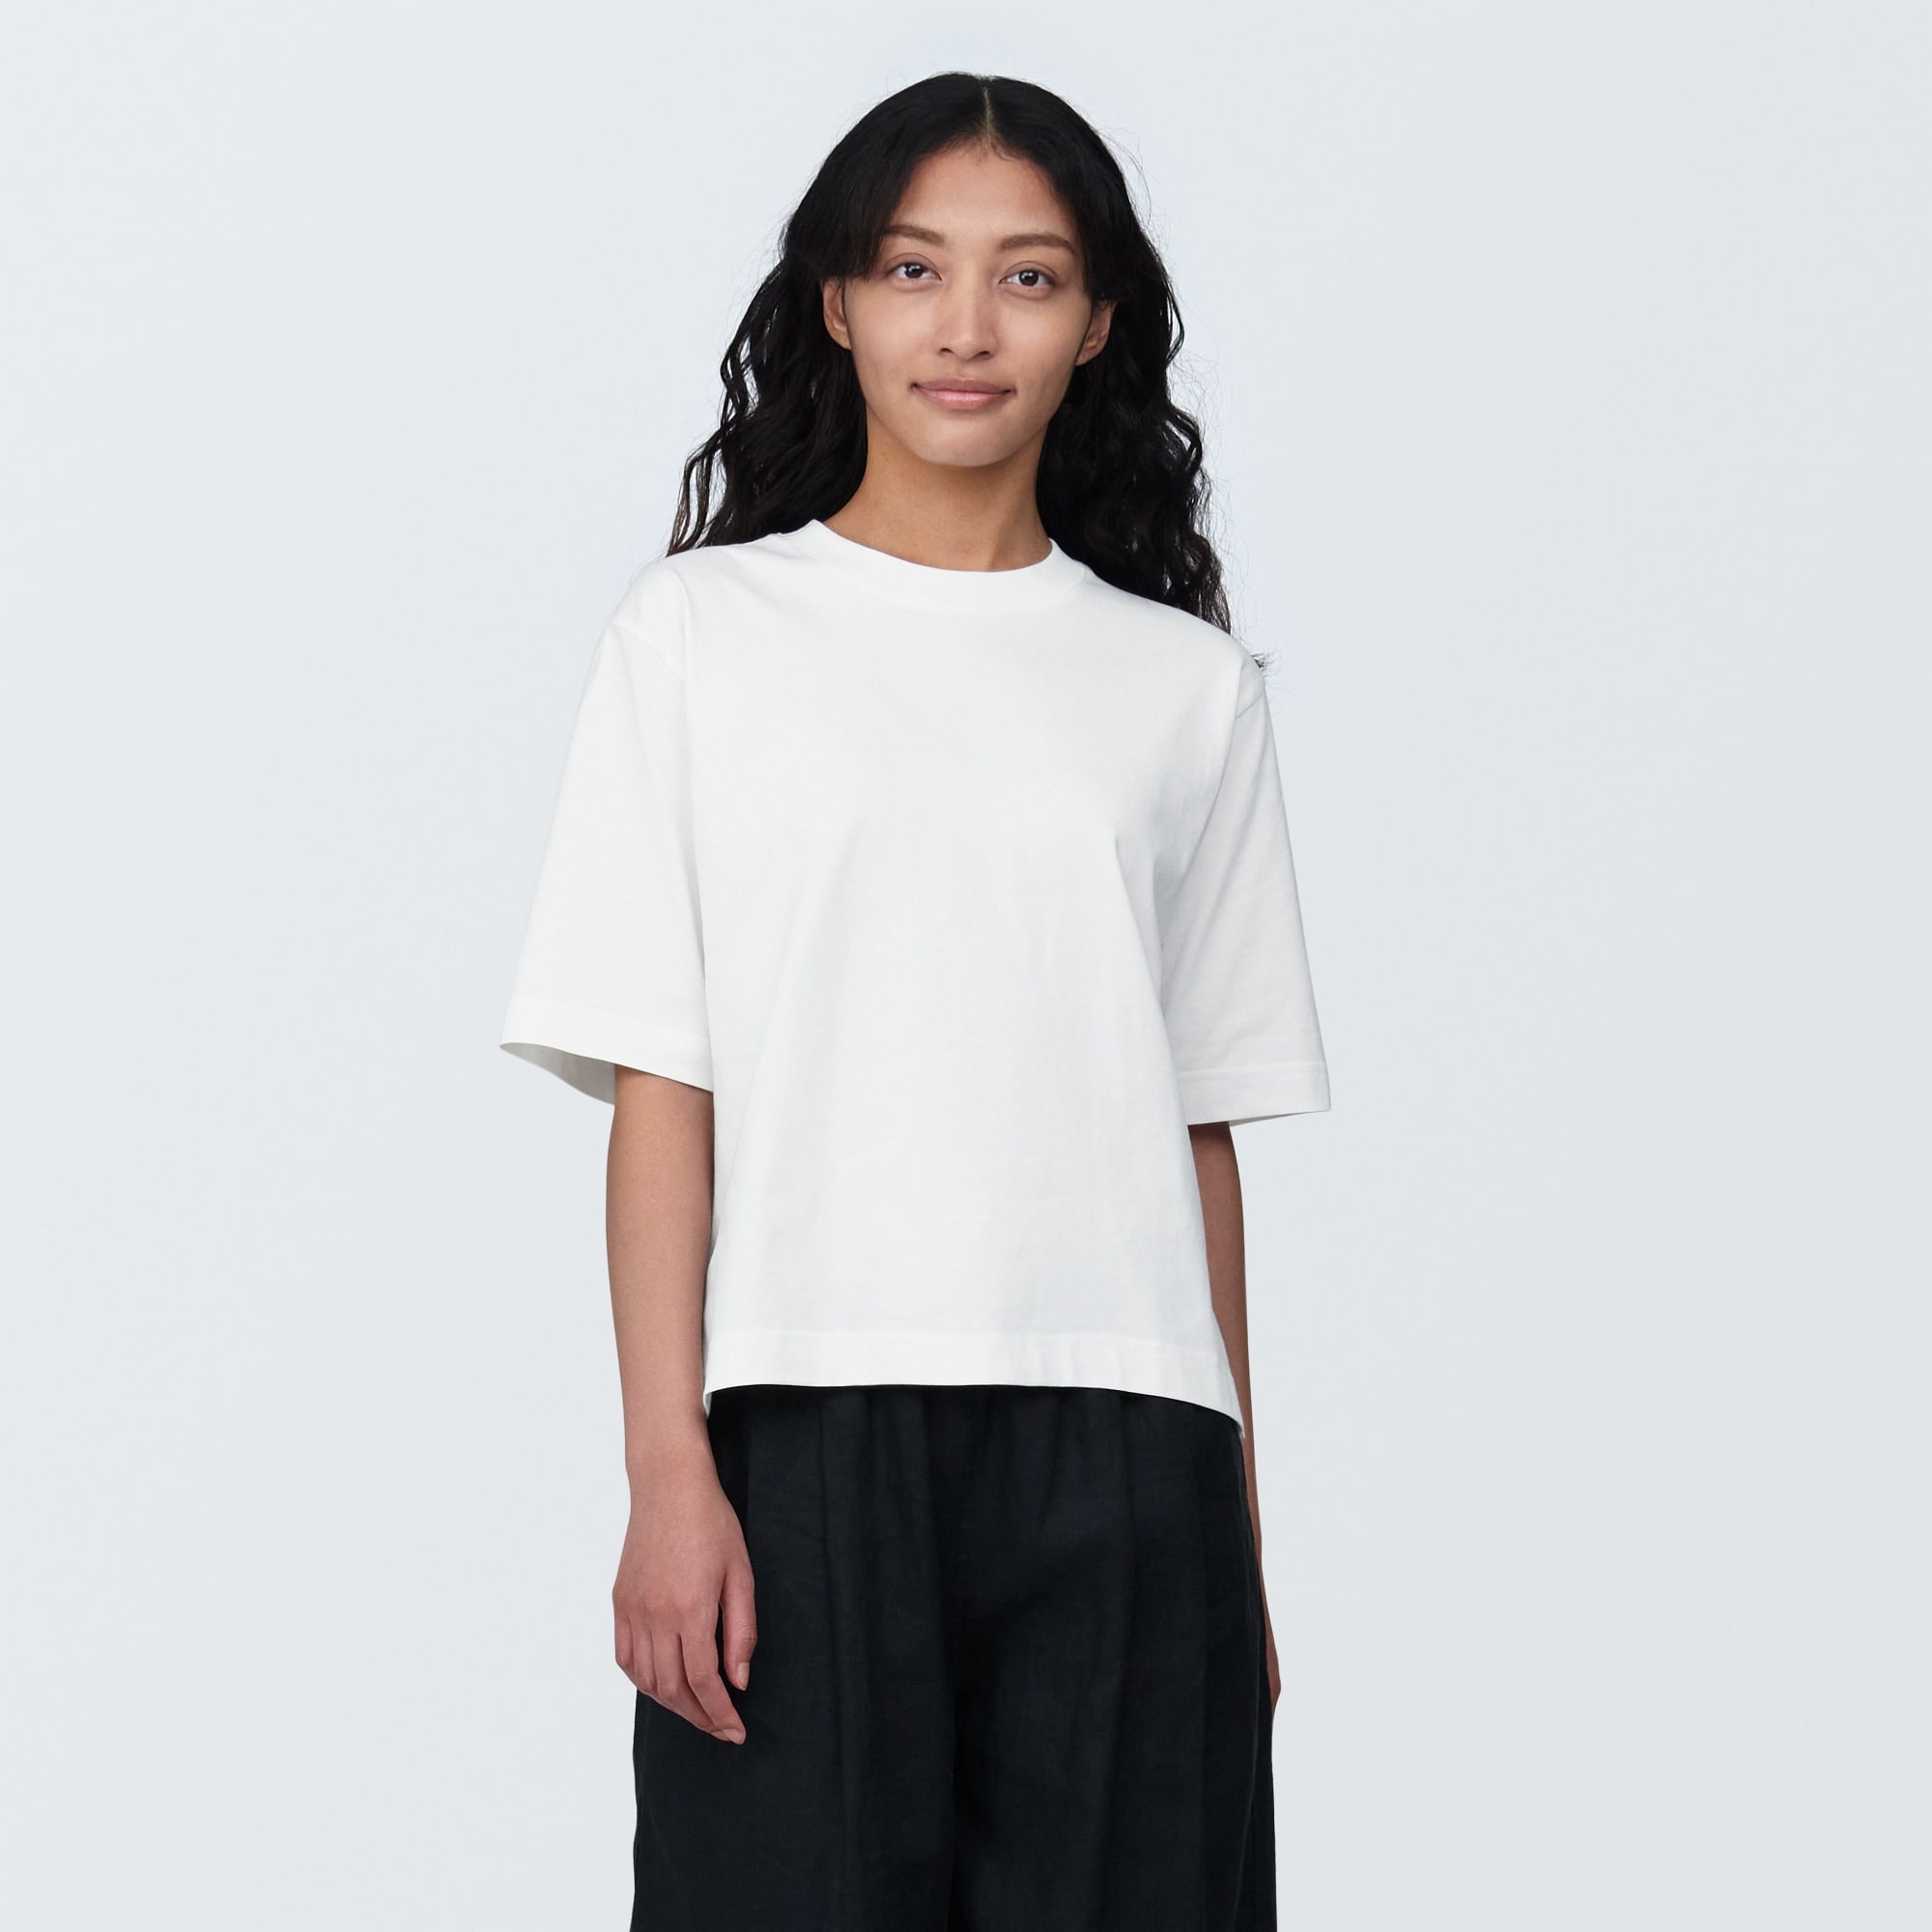 무인양품 일본 양느낌자외선 차단 와이드 반팔 티셔츠